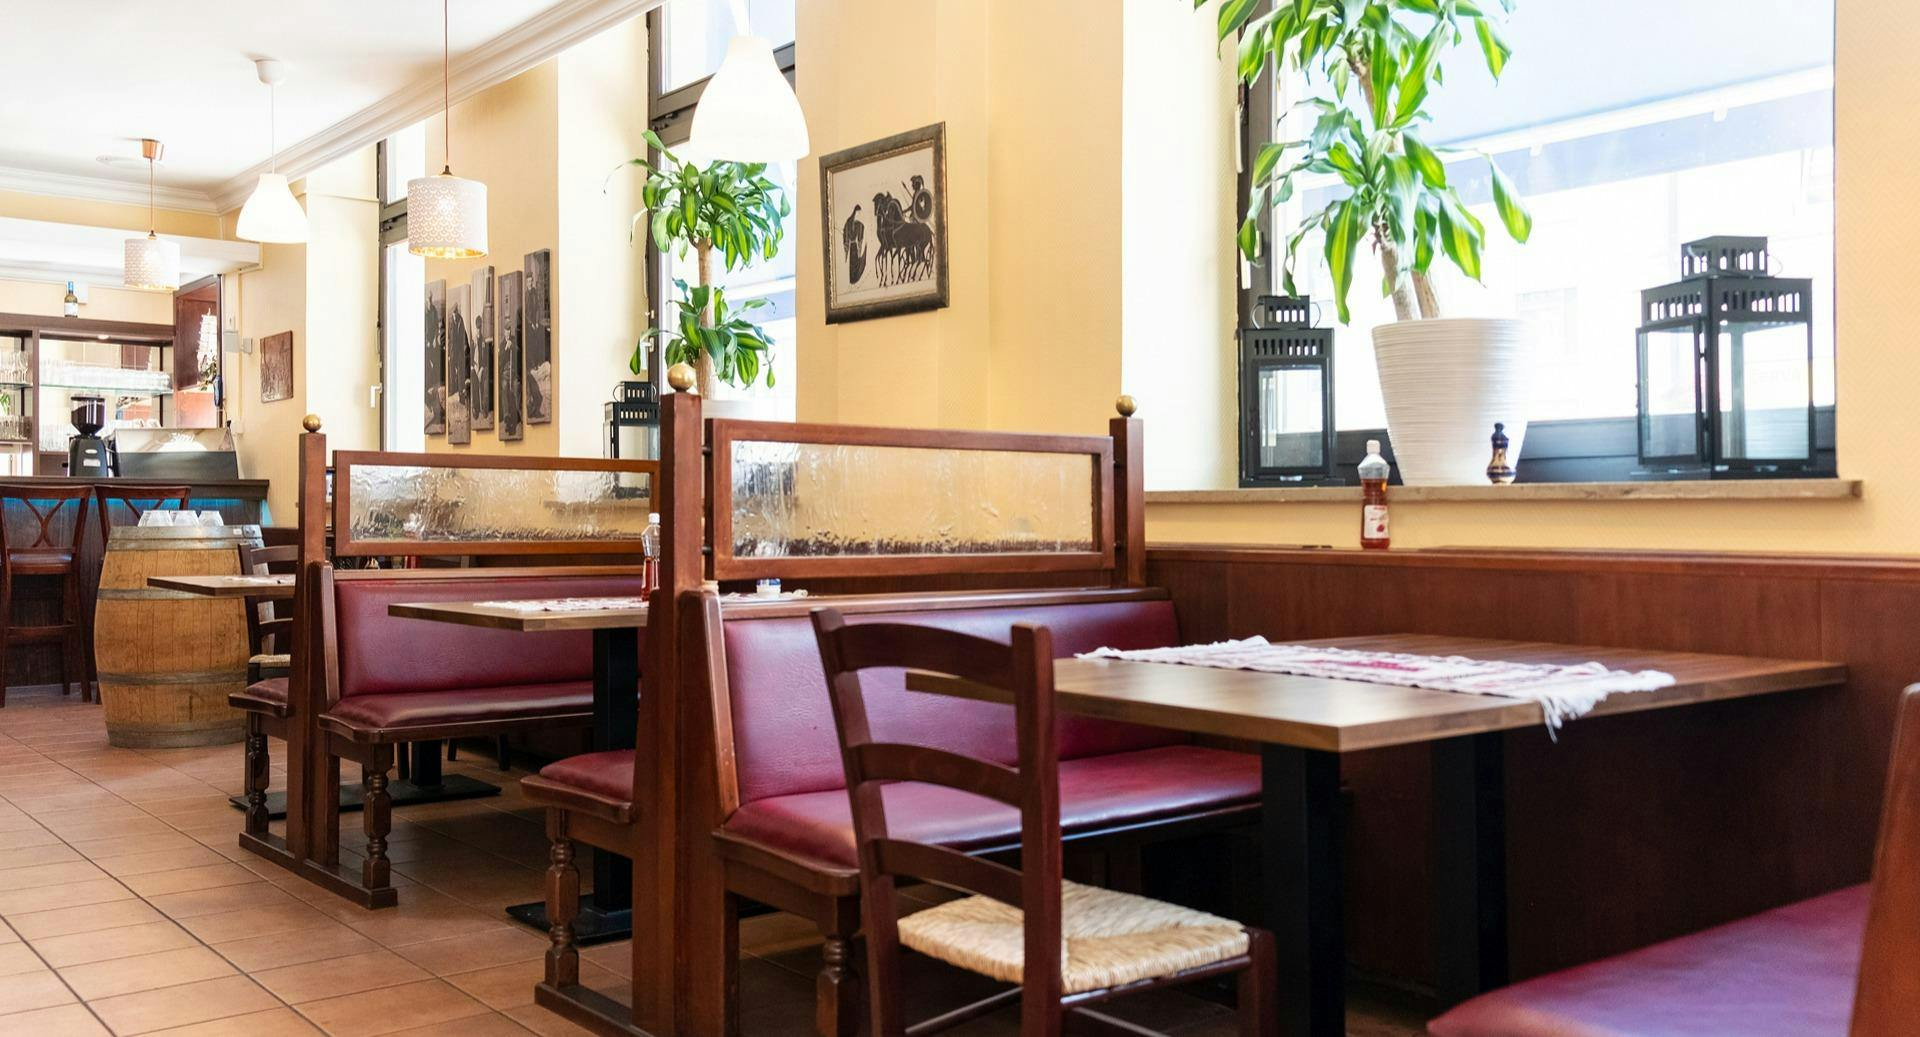 Bilder von Restaurant Georgios der Grieche in Sendling, München